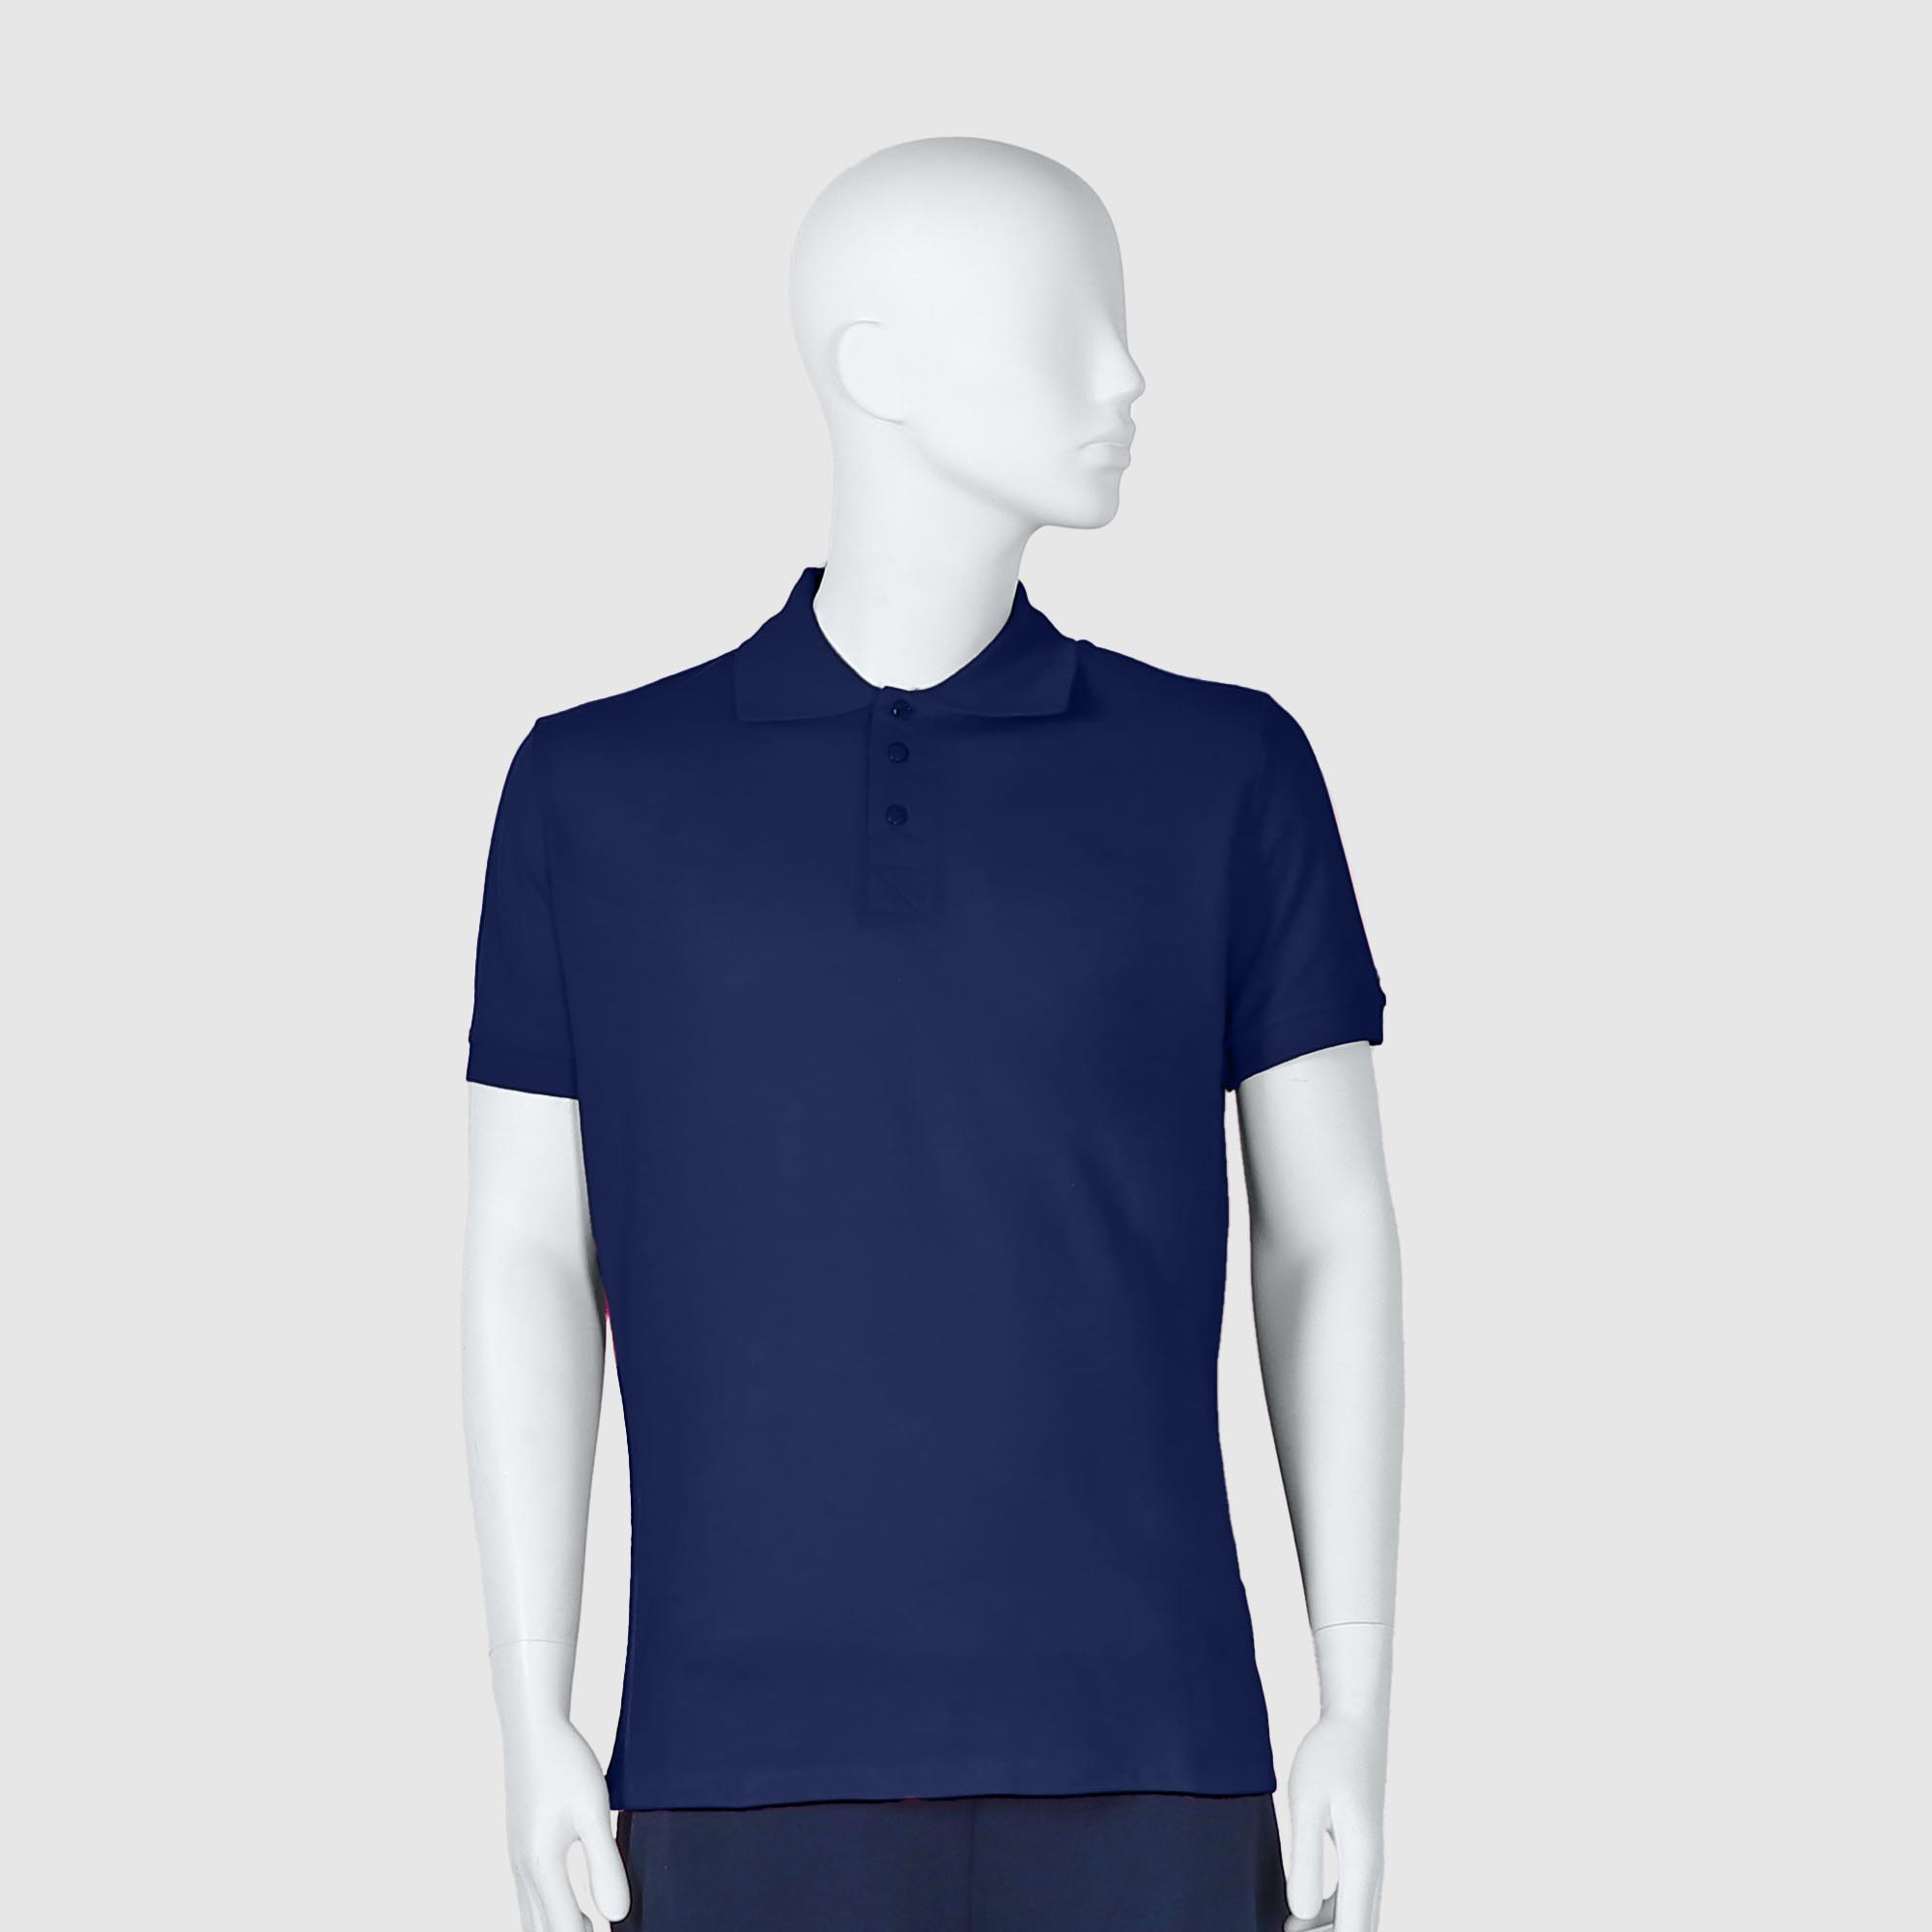 Мужская футболка-поло Diva Teks синяя (DTD-10), цвет синий, размер 50-52